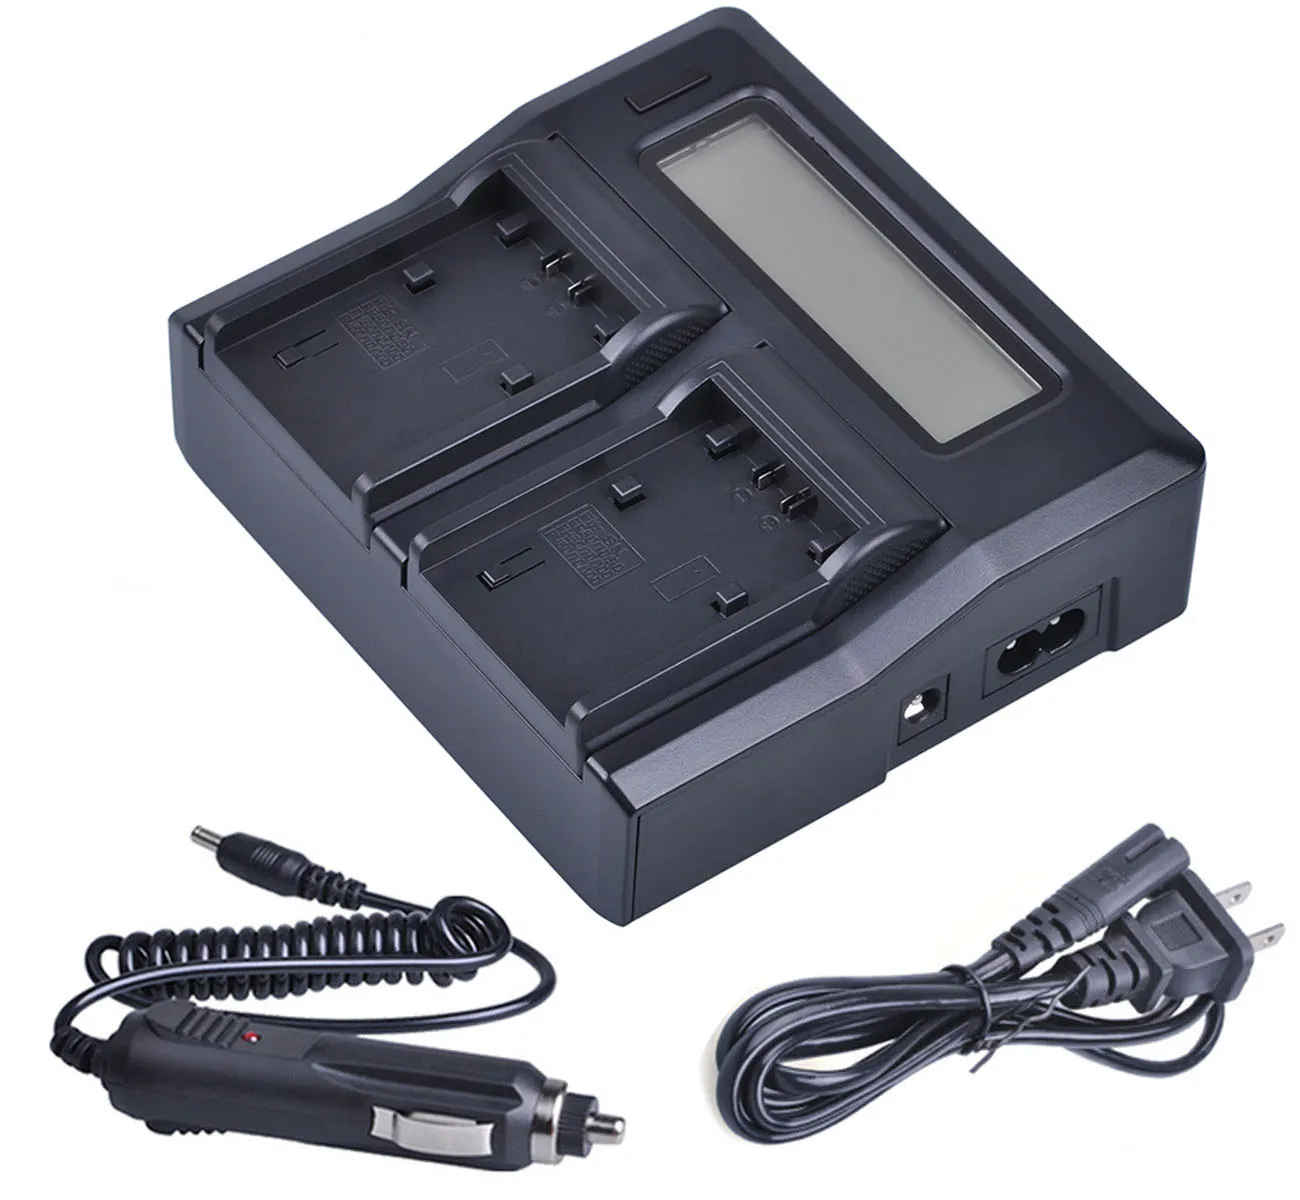 DCR-DVD508E DCR-DVD506E LCD USB Battery Charger for Sony DCR-DVD505E DCR-DVD510E Handycam Camcorder